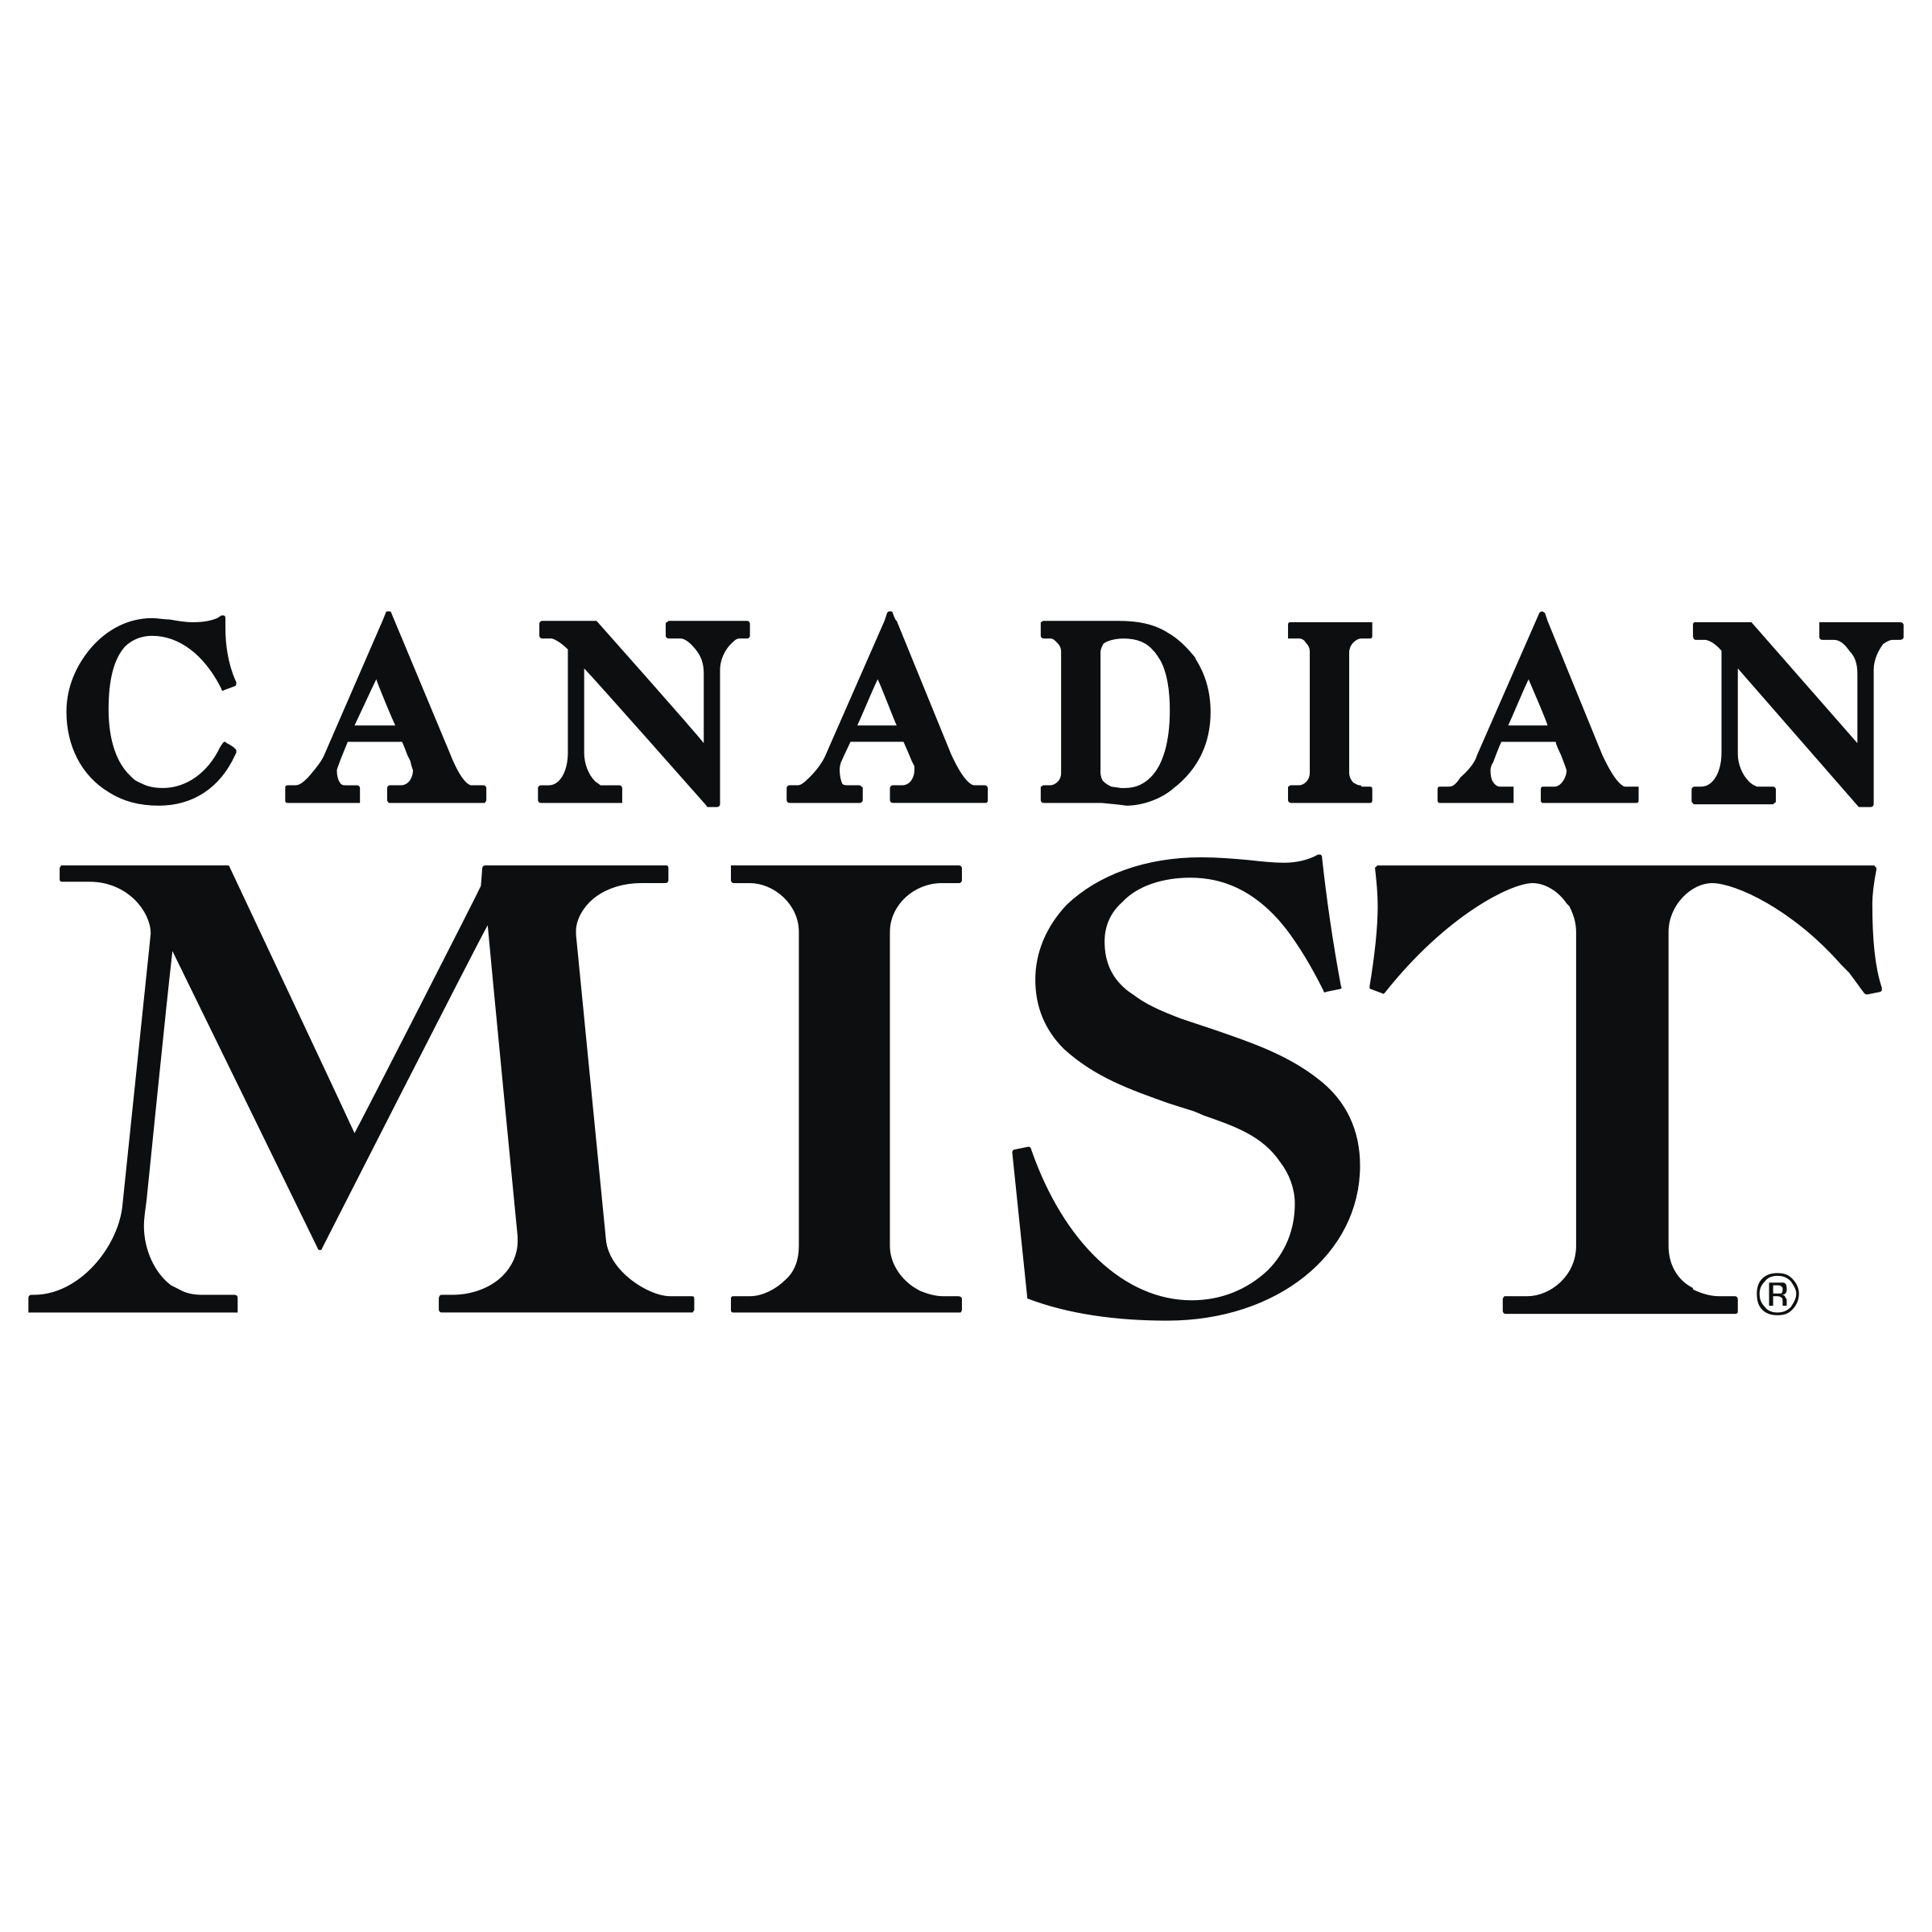 Mist Logo - Canadian Mist Logo PNG Transparent & SVG Vector - Freebie Supply